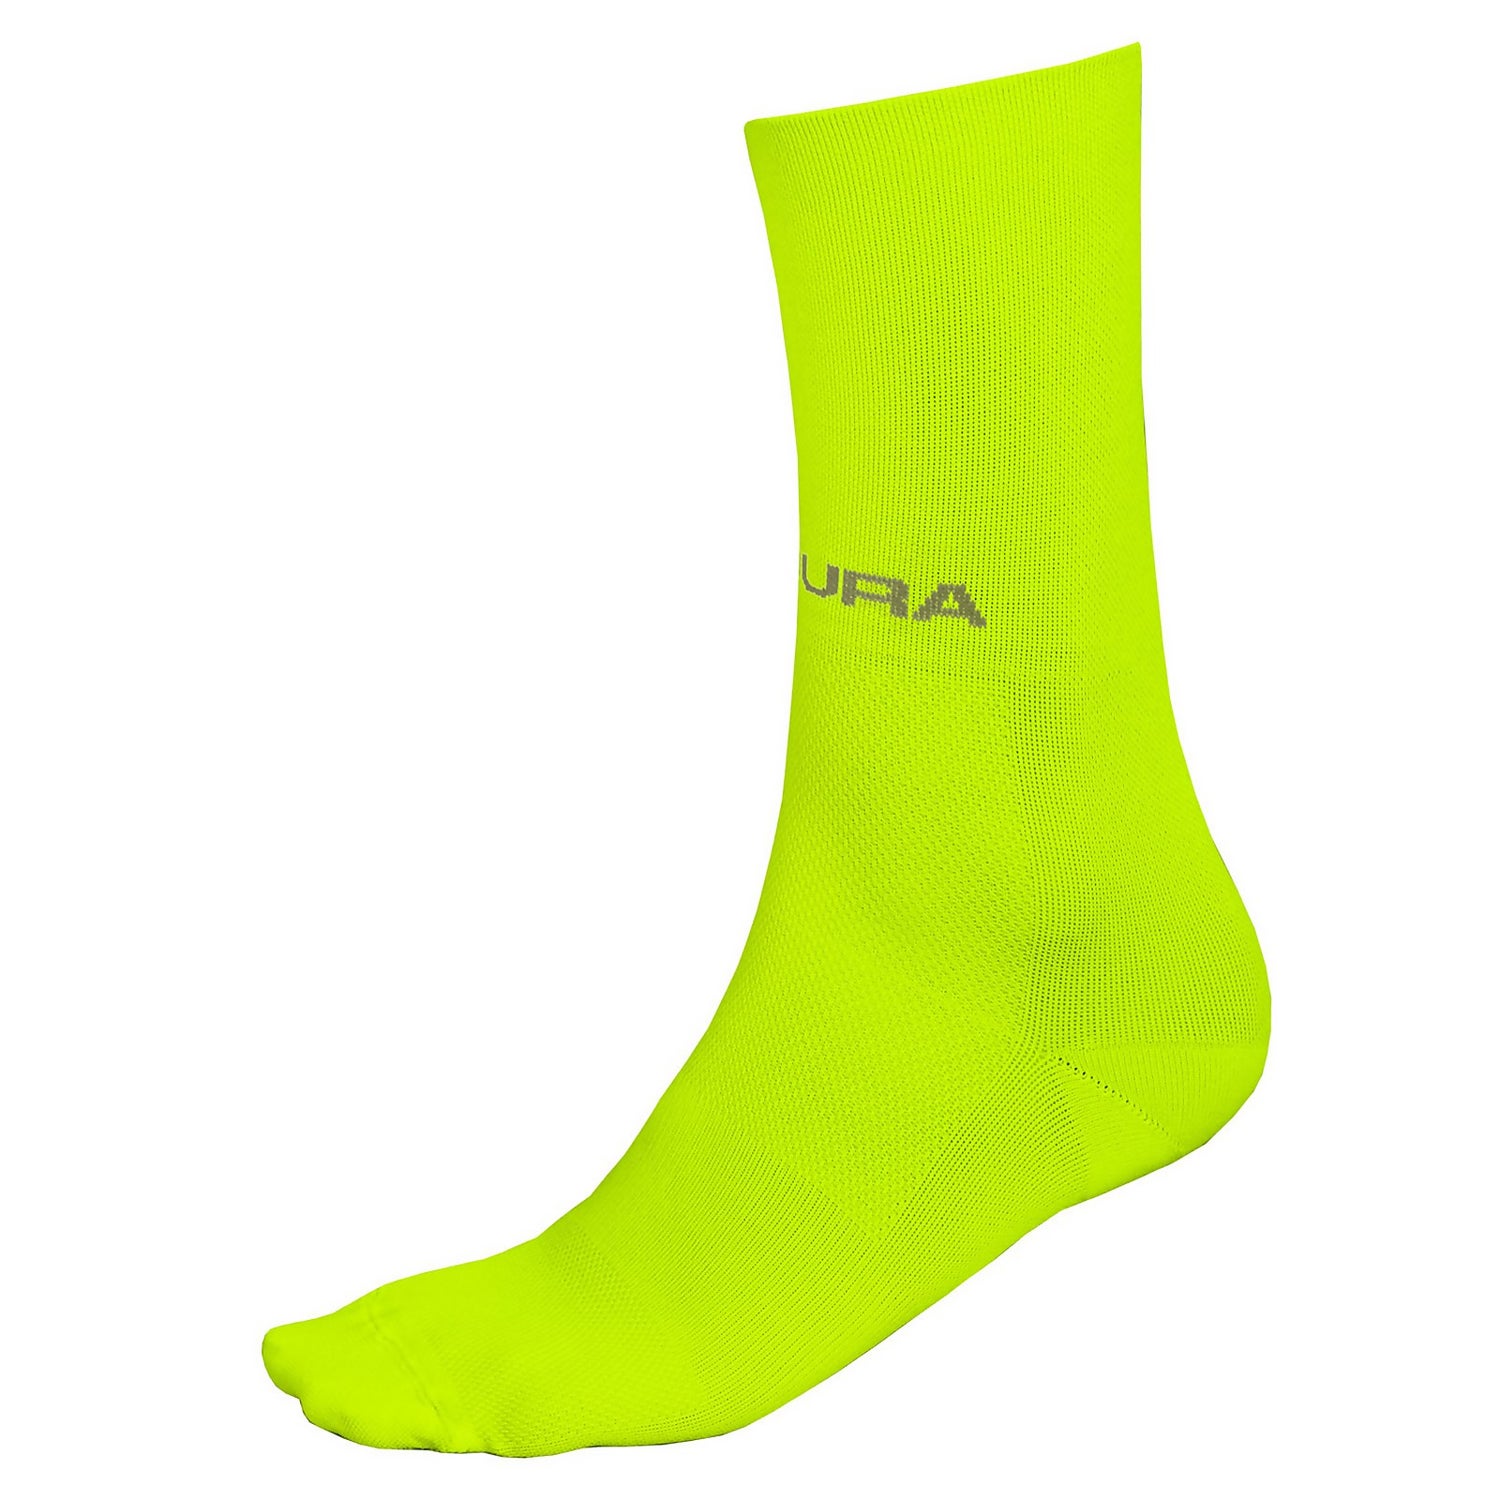 Men's Pro SL Sock II - Hi-Viz Yellow - L-XL